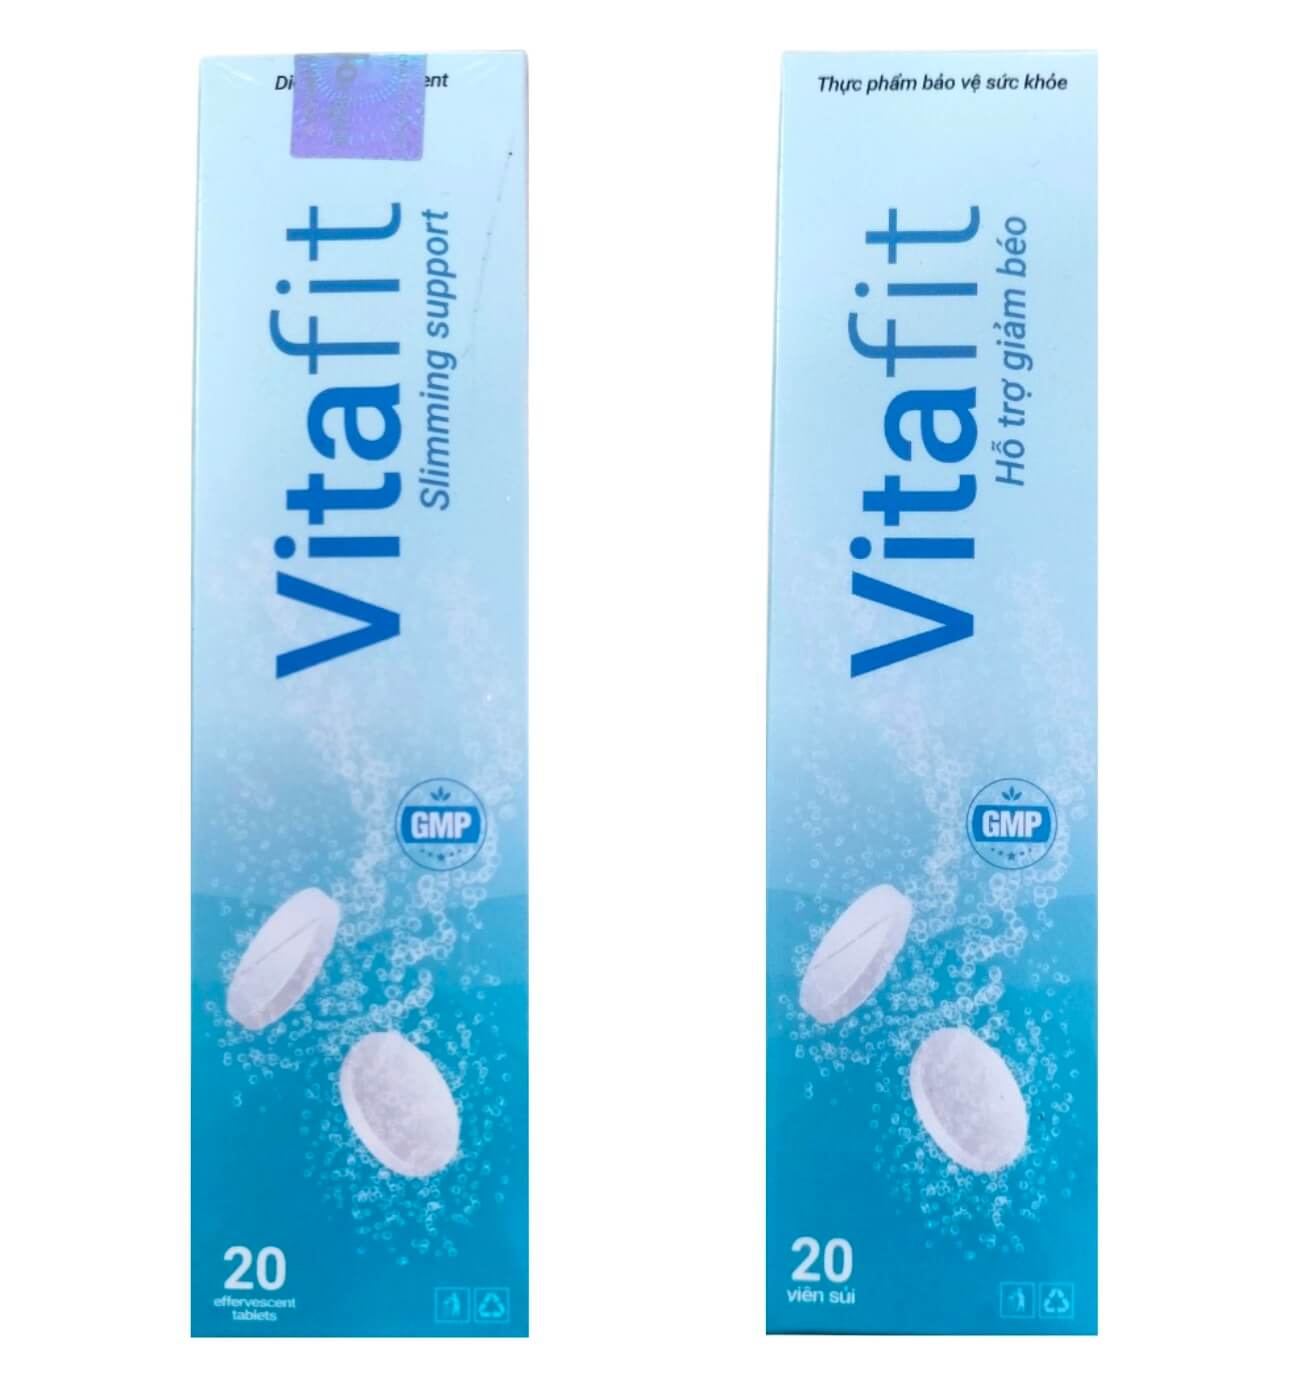 Vitafit là thuốc gì, thuốc giảm cân Vitafit có tốt không hay lừa đảo giá bao nhiêu hình 14